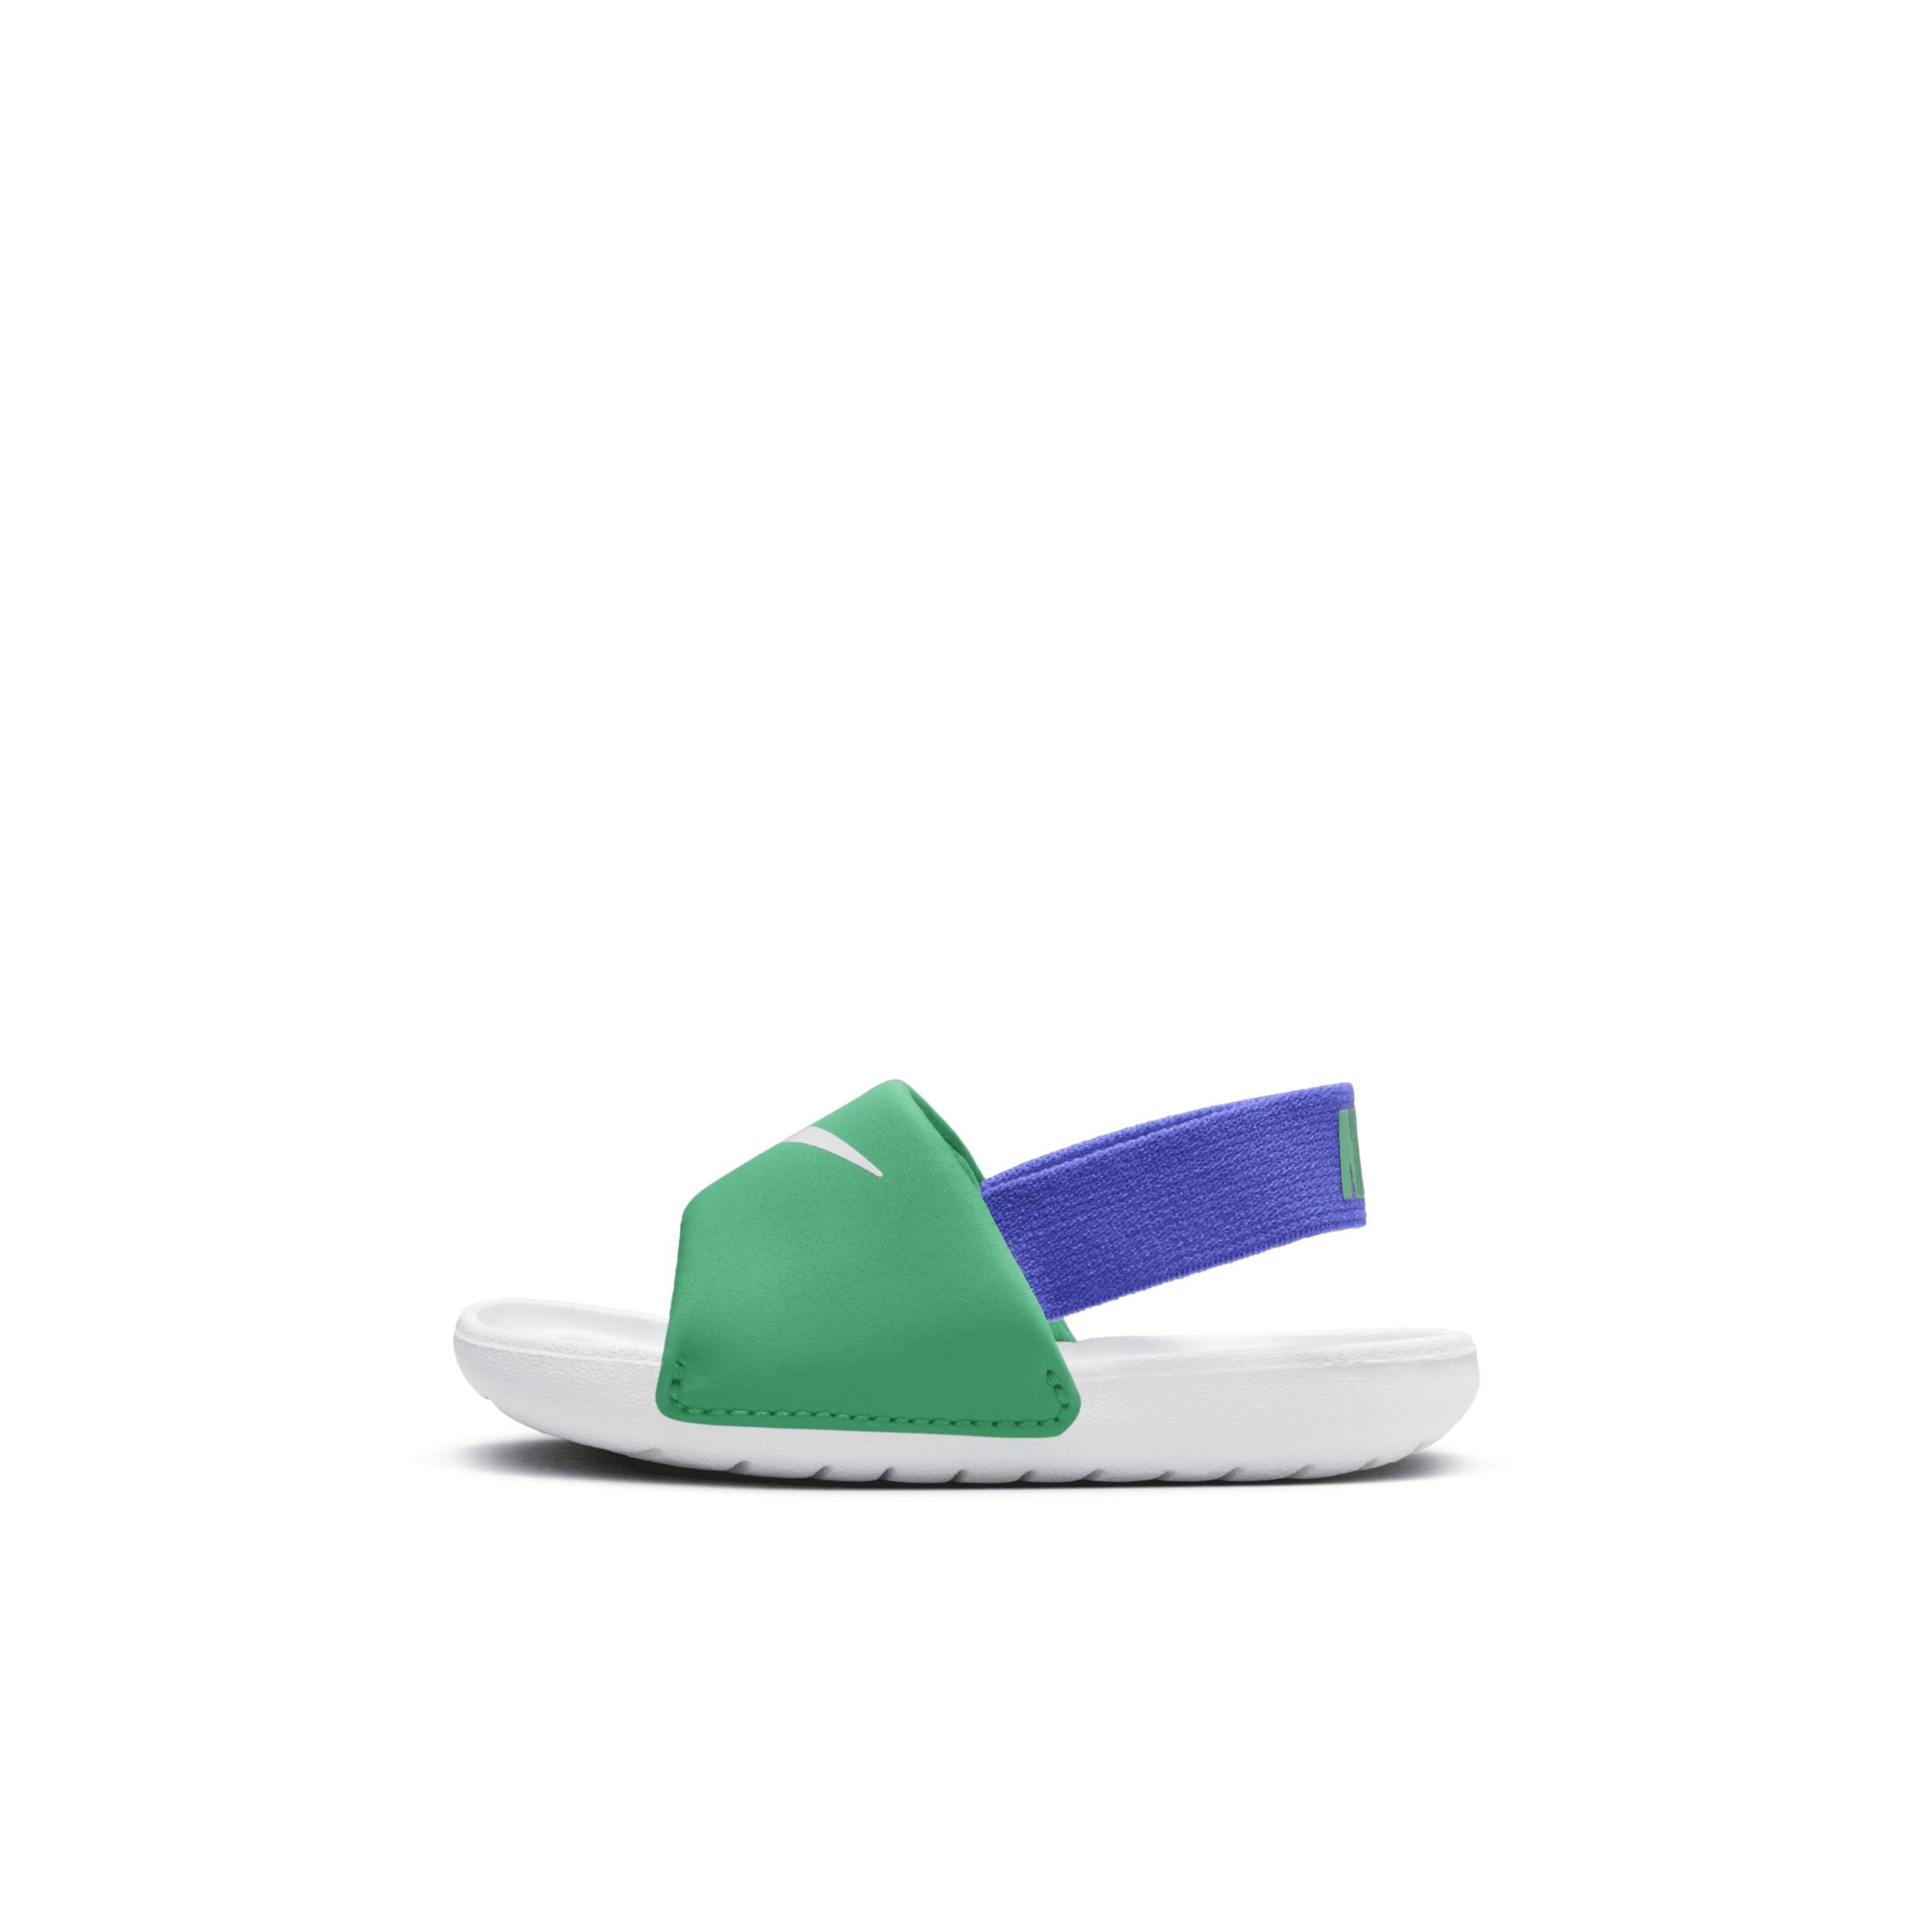 Nike Kawa Baby/Toddler Slides by NIKE